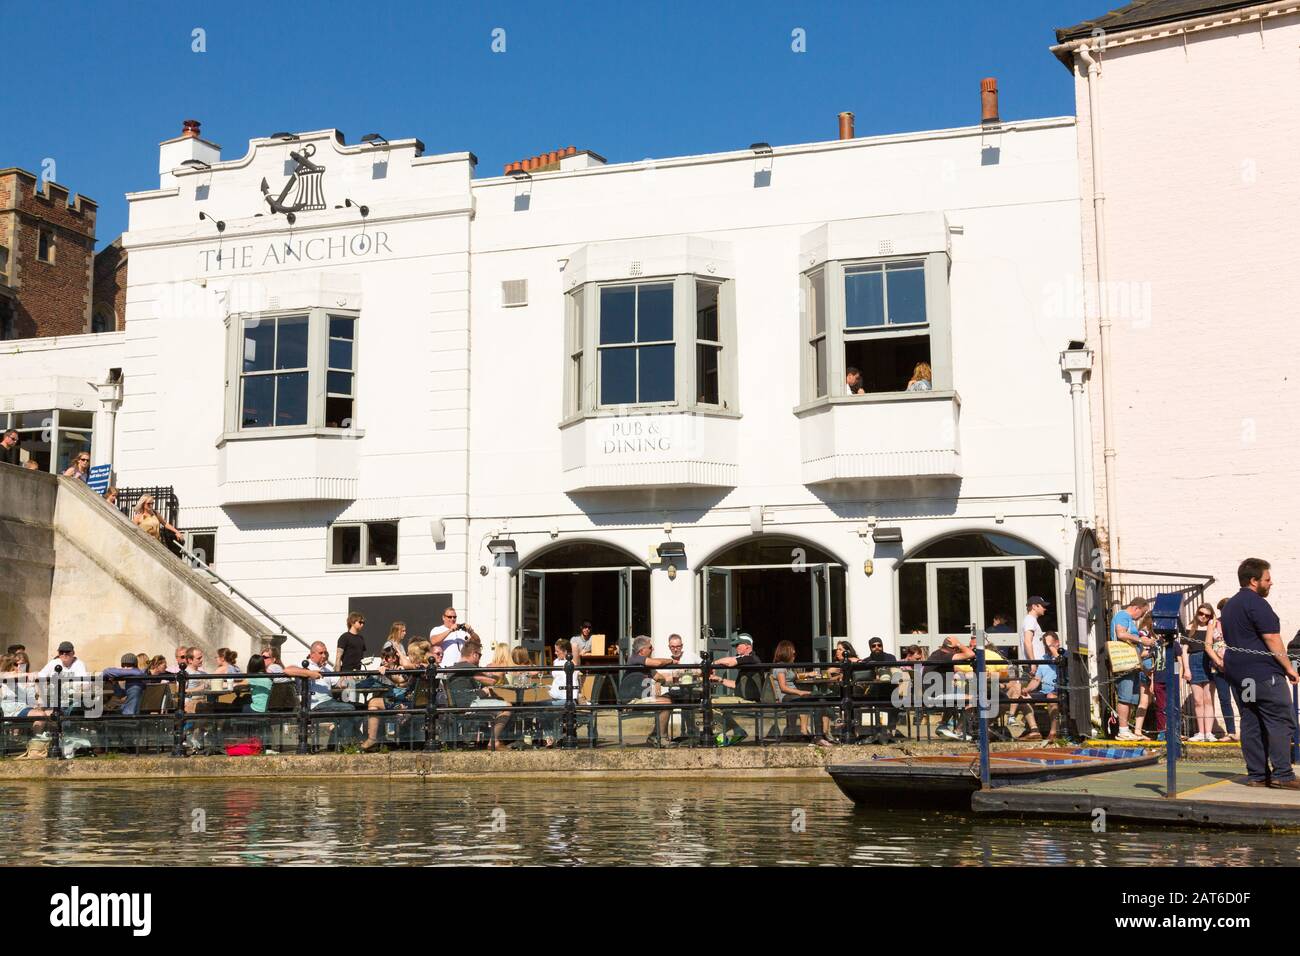 Les visiteurs du pub Anchor boivent et mangeaient à côté de la River Cam à Cambridge, au Royaume-Uni Banque D'Images